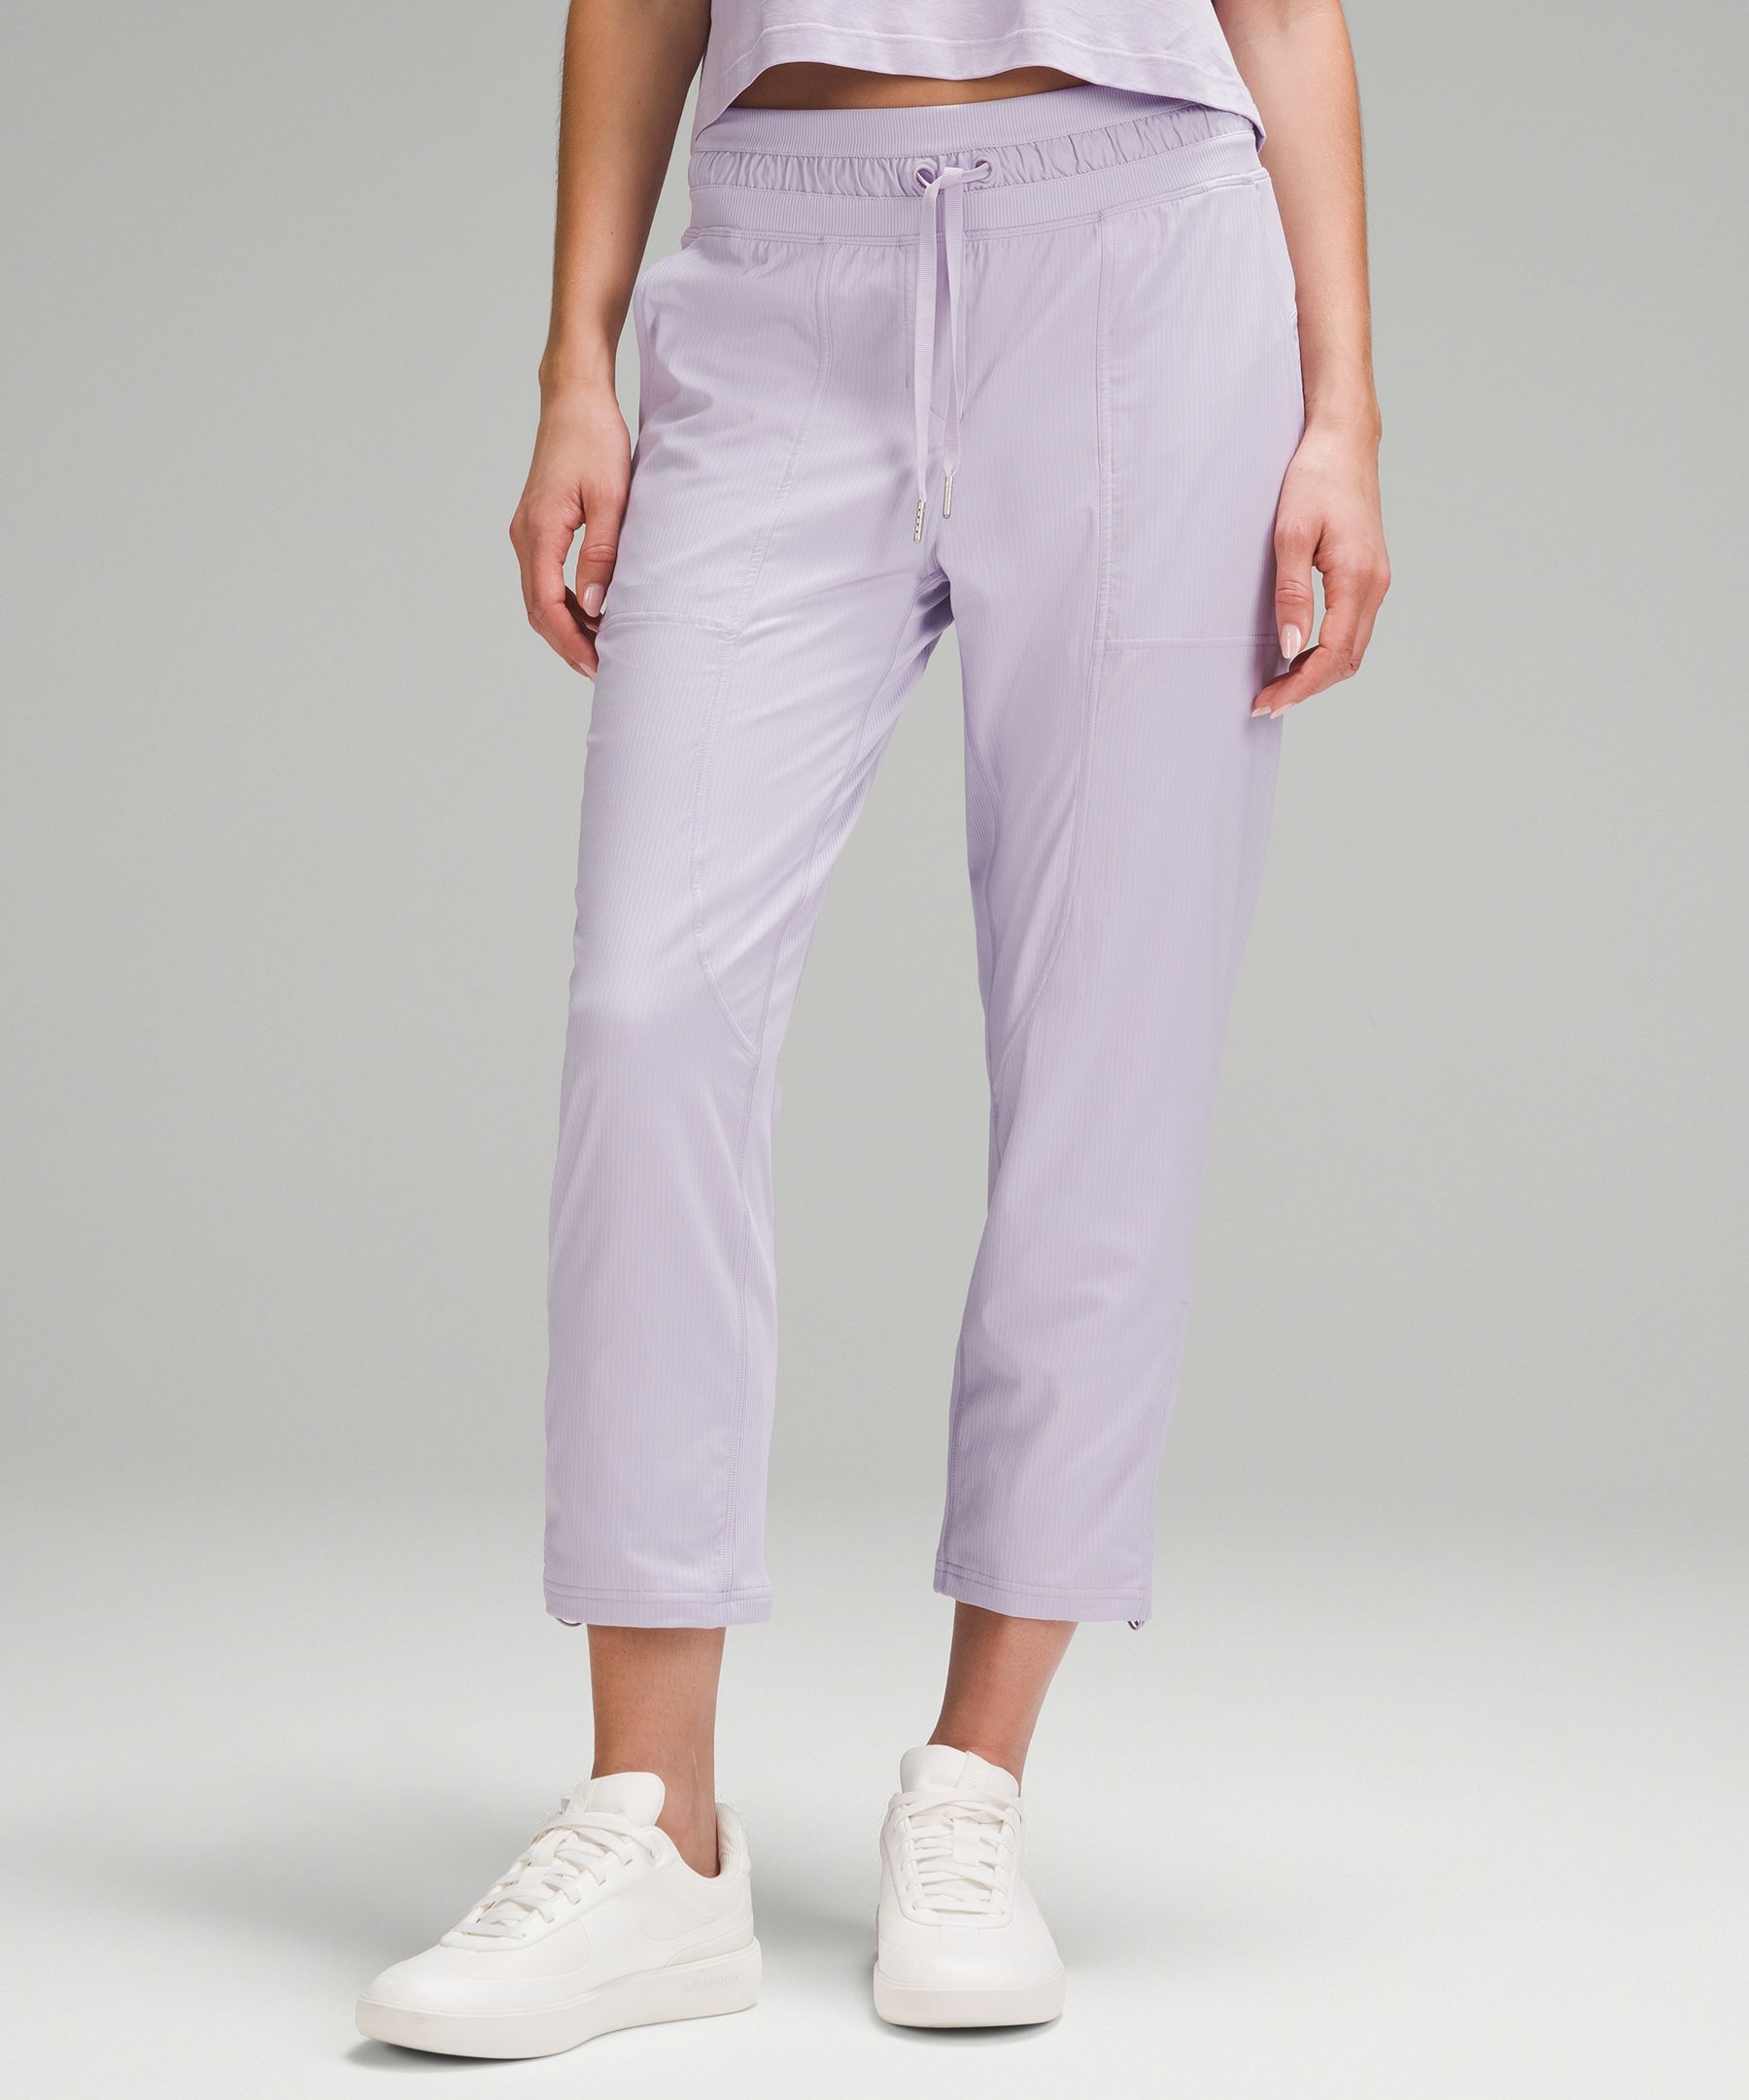 Pants & Jumpsuits, Lululemon Dance Studio Midrise Crop 25 Size 2 Soft  Denim